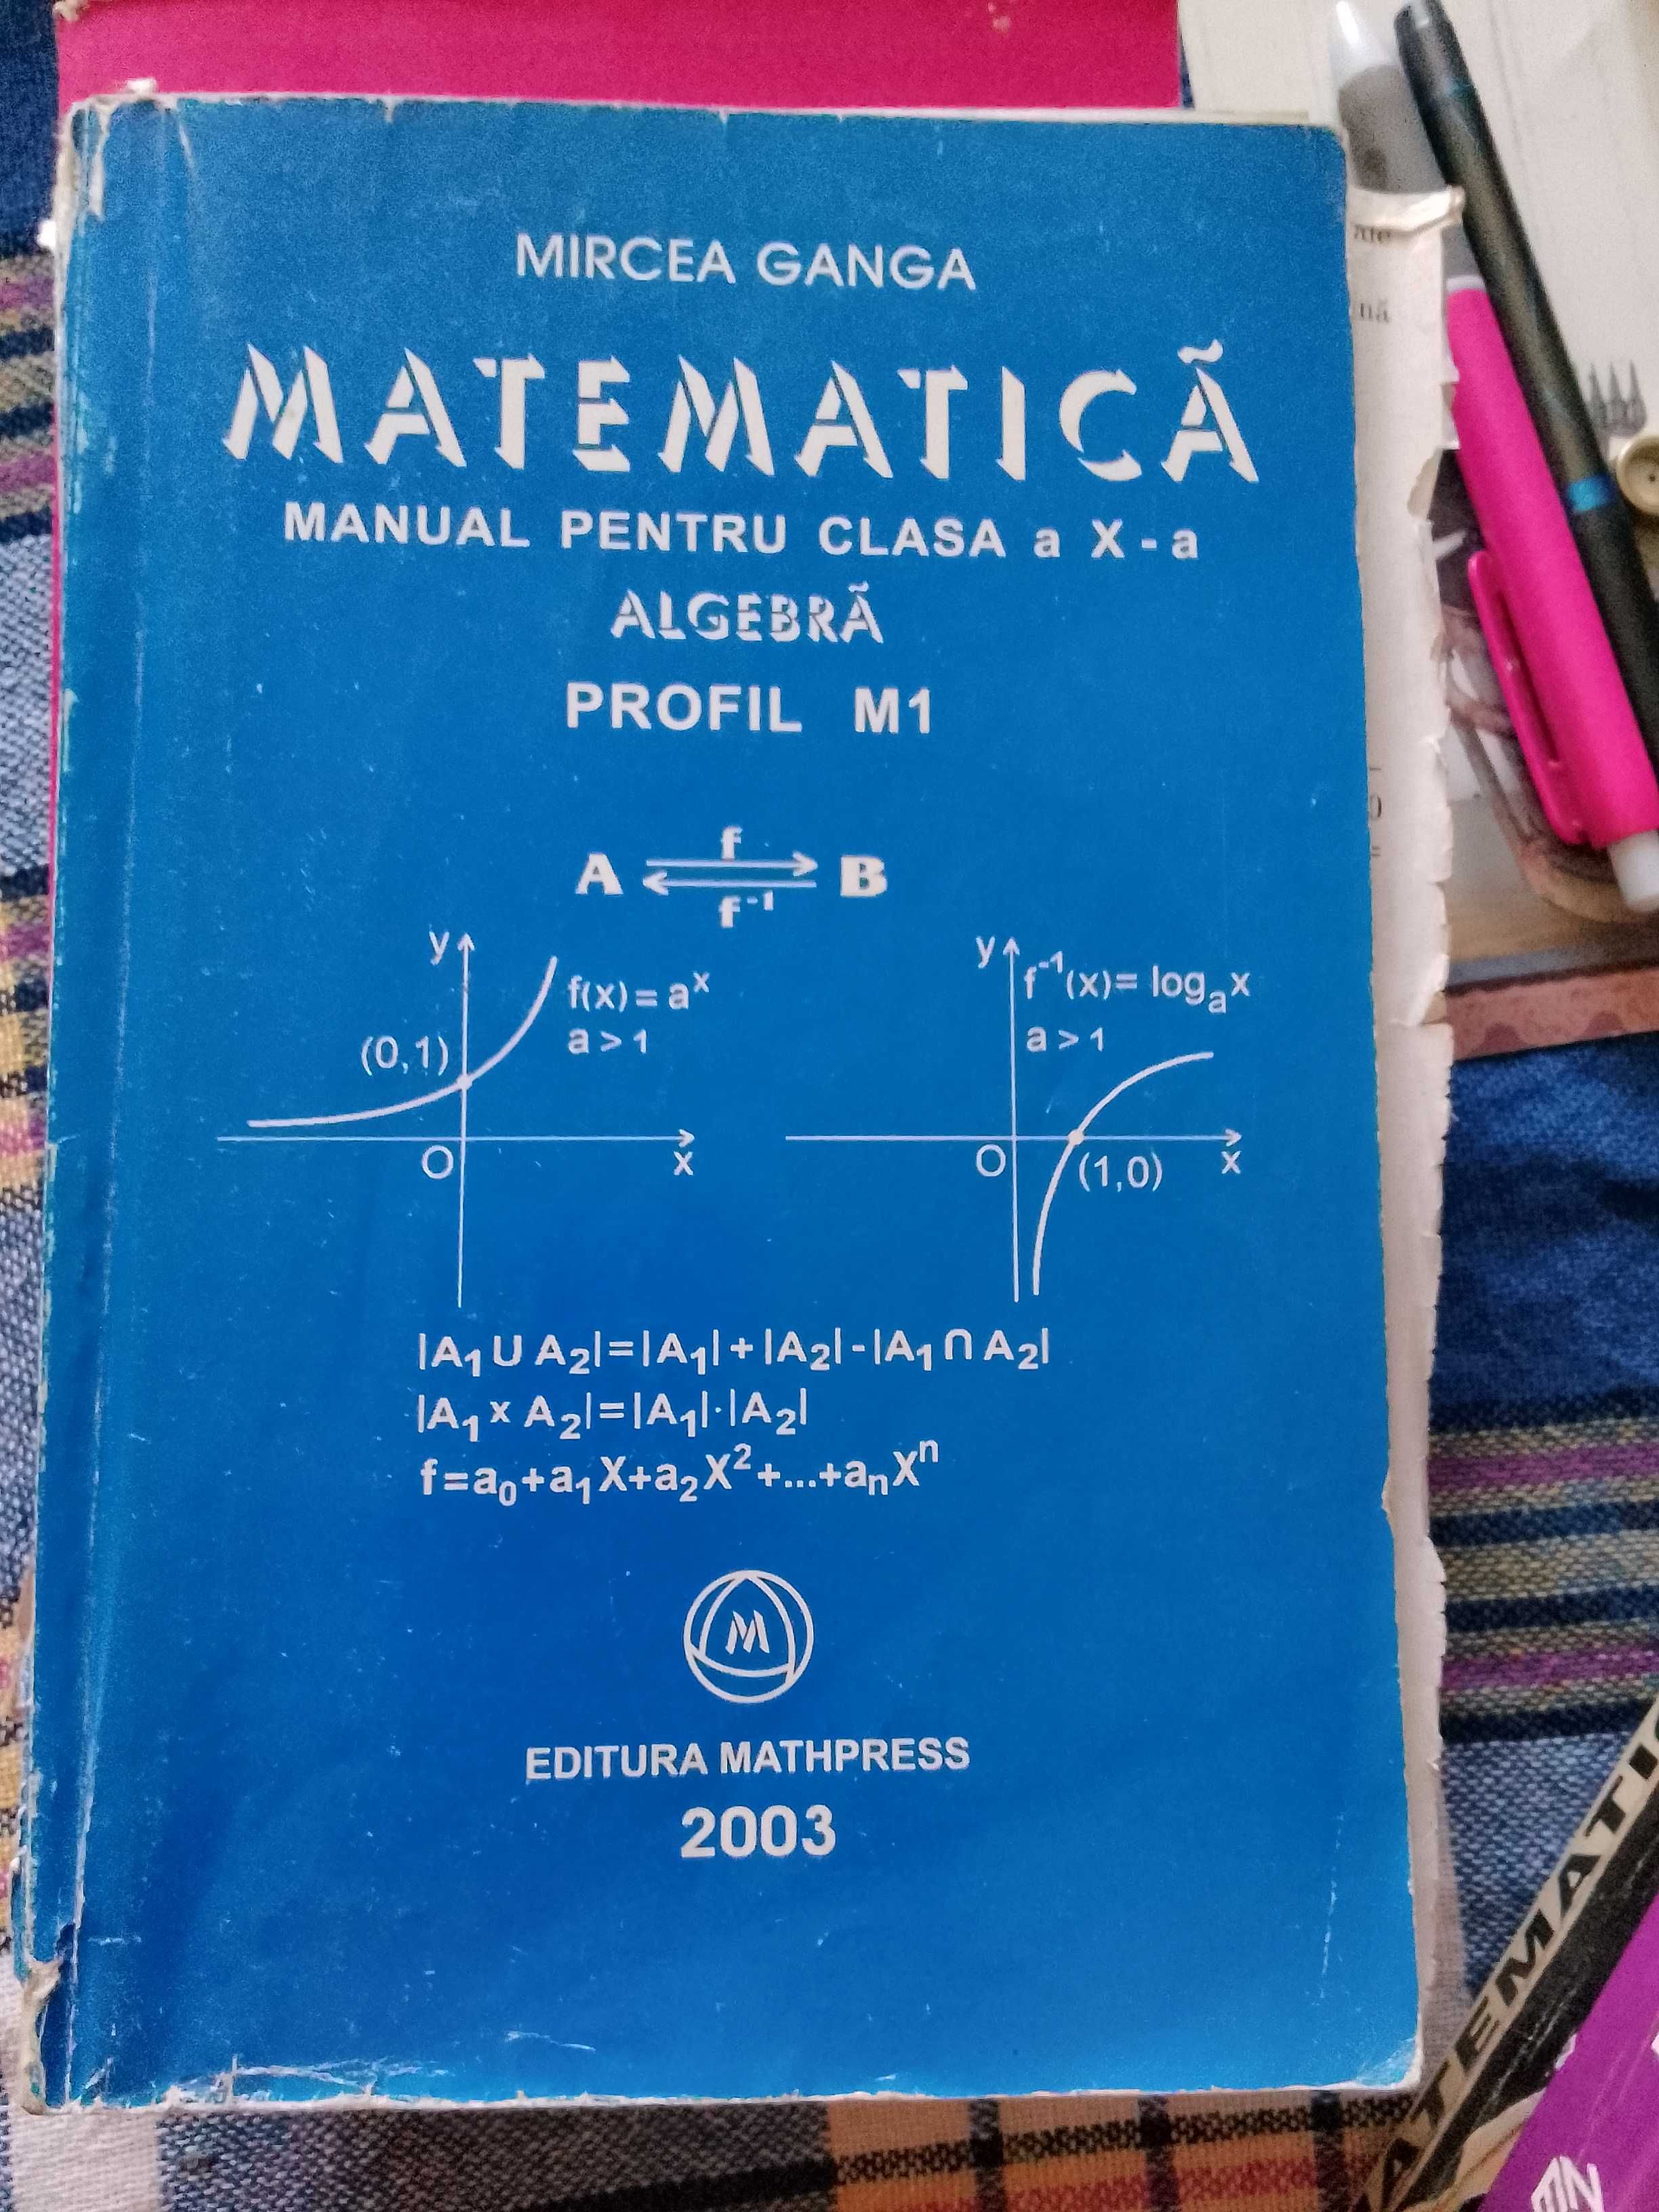 Cărți matematica pt liceu 6 buc